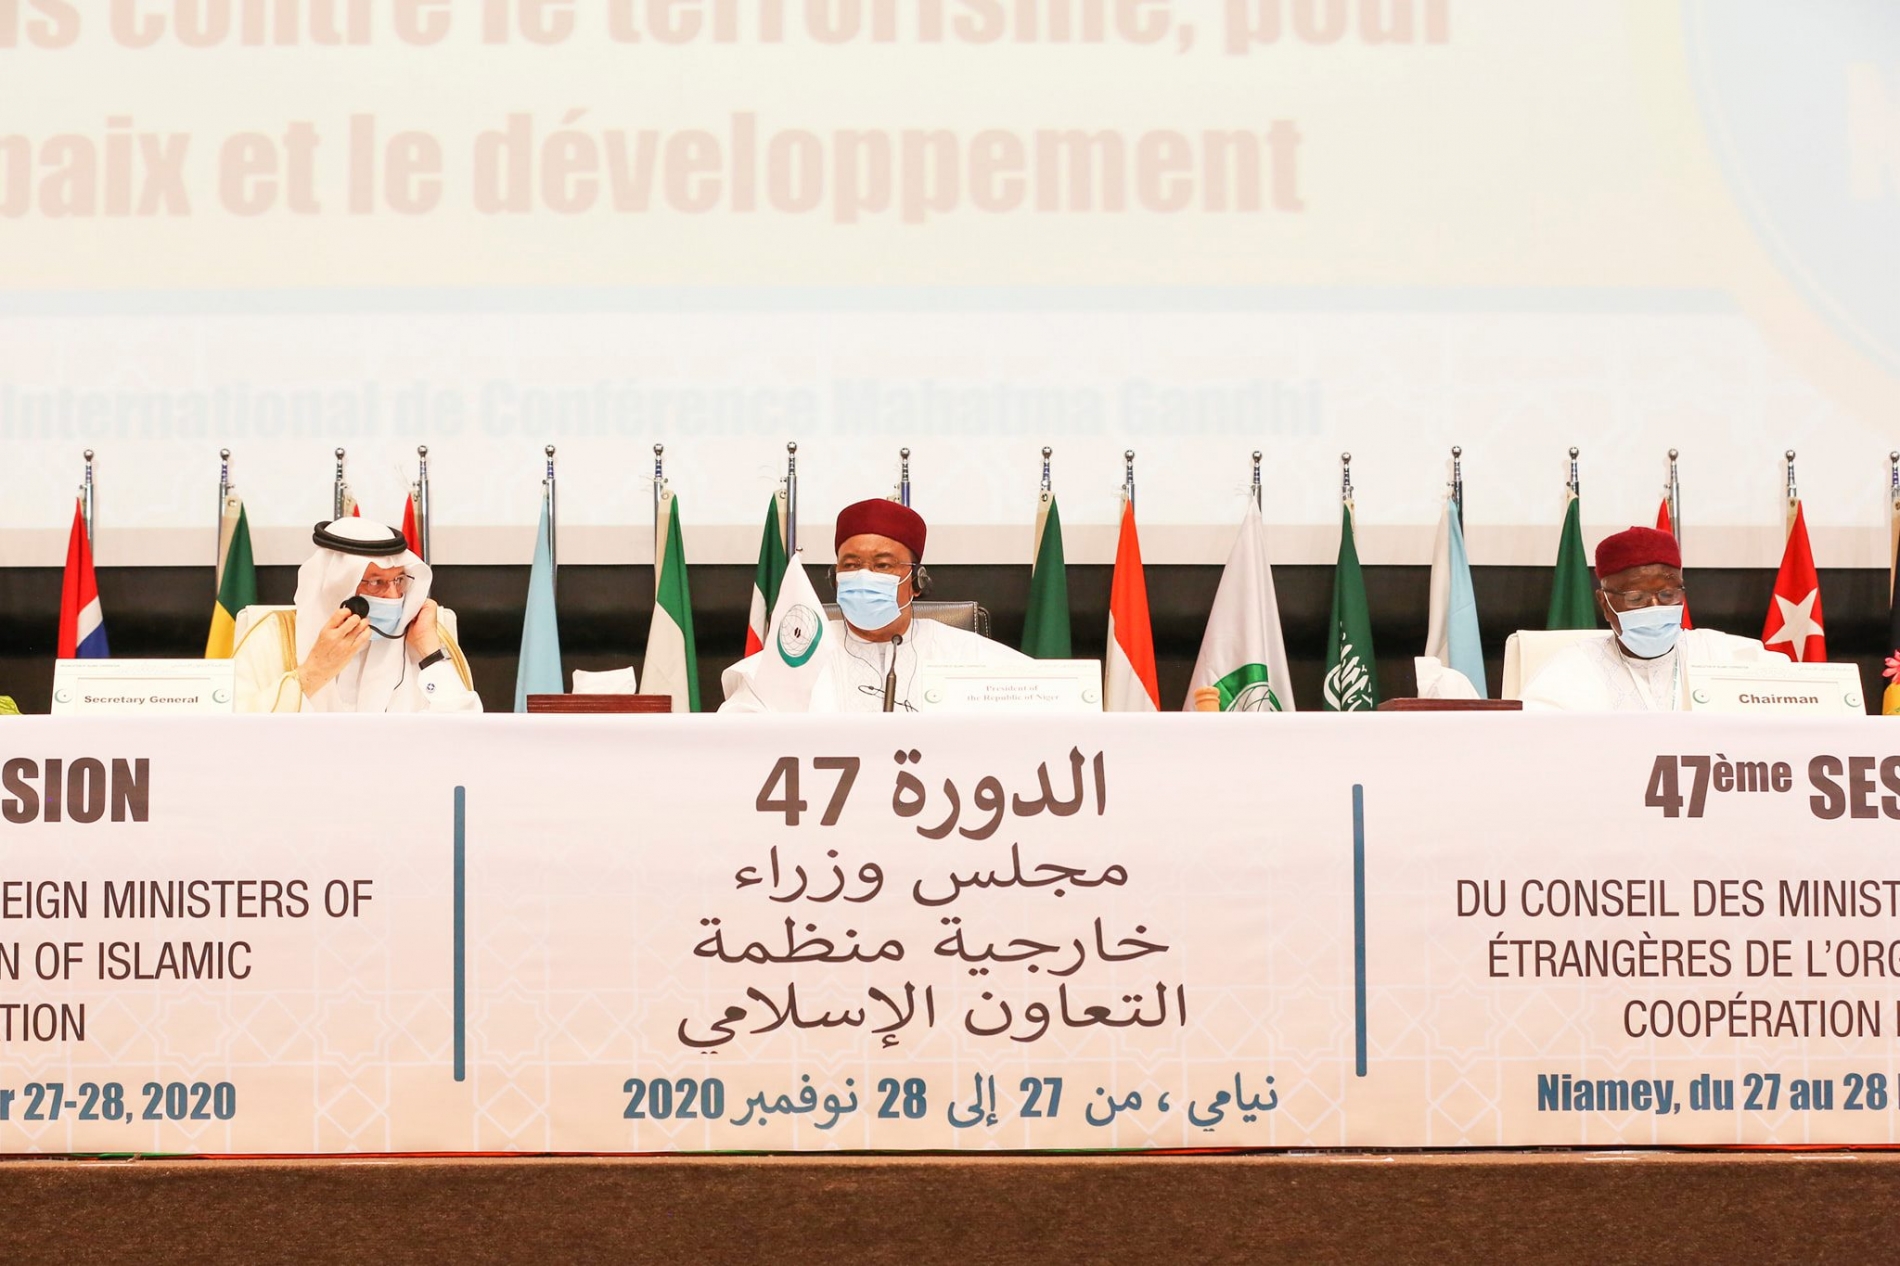 Discours d’ouverture du Président de la République à l’occasion de la 47ème Session du Conseil des Ministres des Affaires Etrangères (CMAE) de l’Organisation de la Coopération Islamique (OCI)